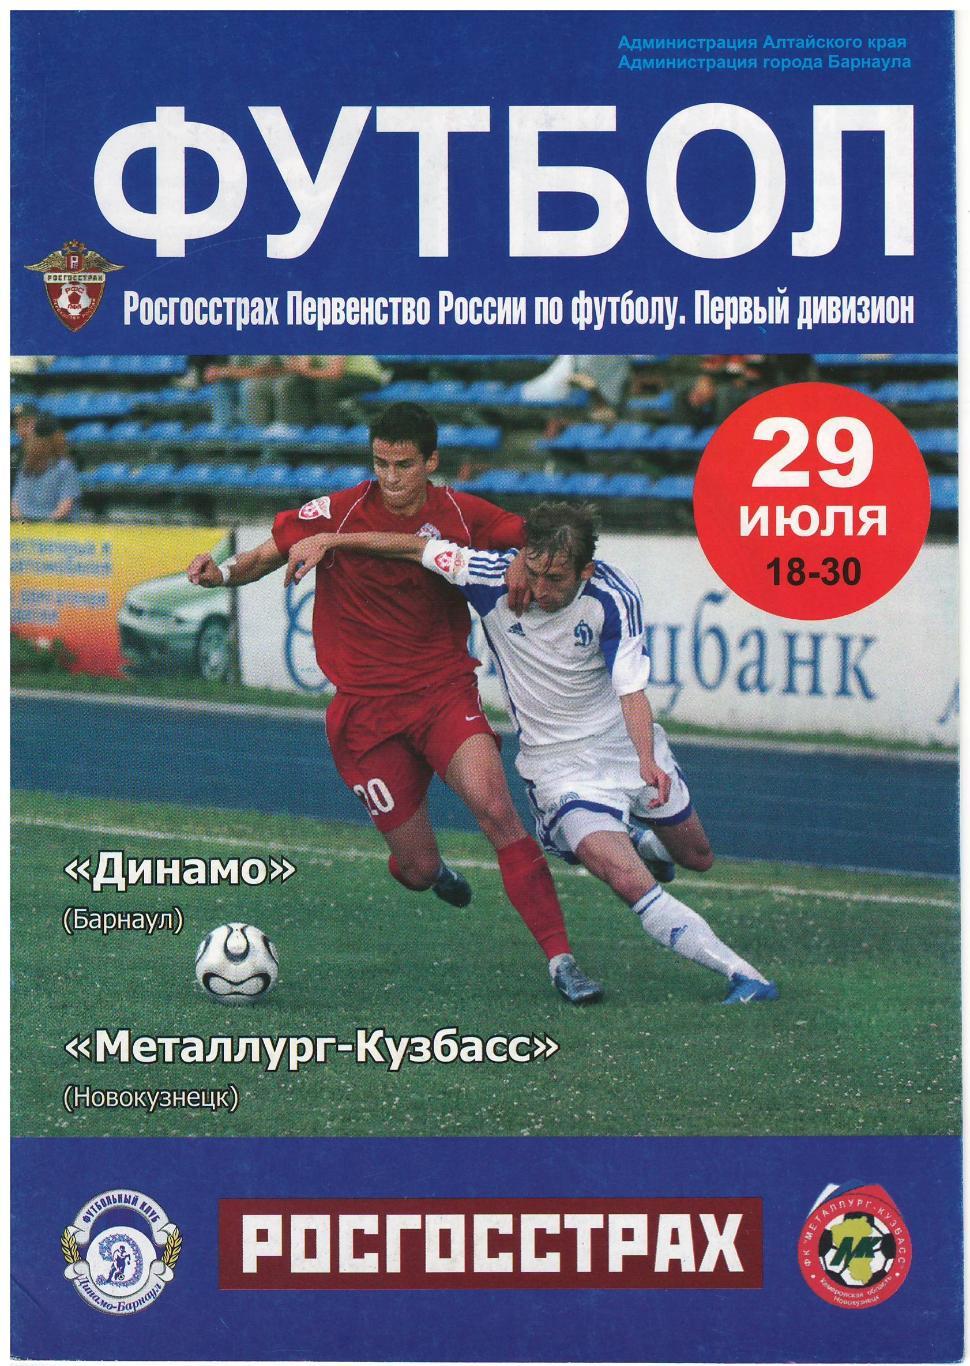 Динамо Барнаул - Металлург-Кузбасс Новокузнецк 29.07.2008